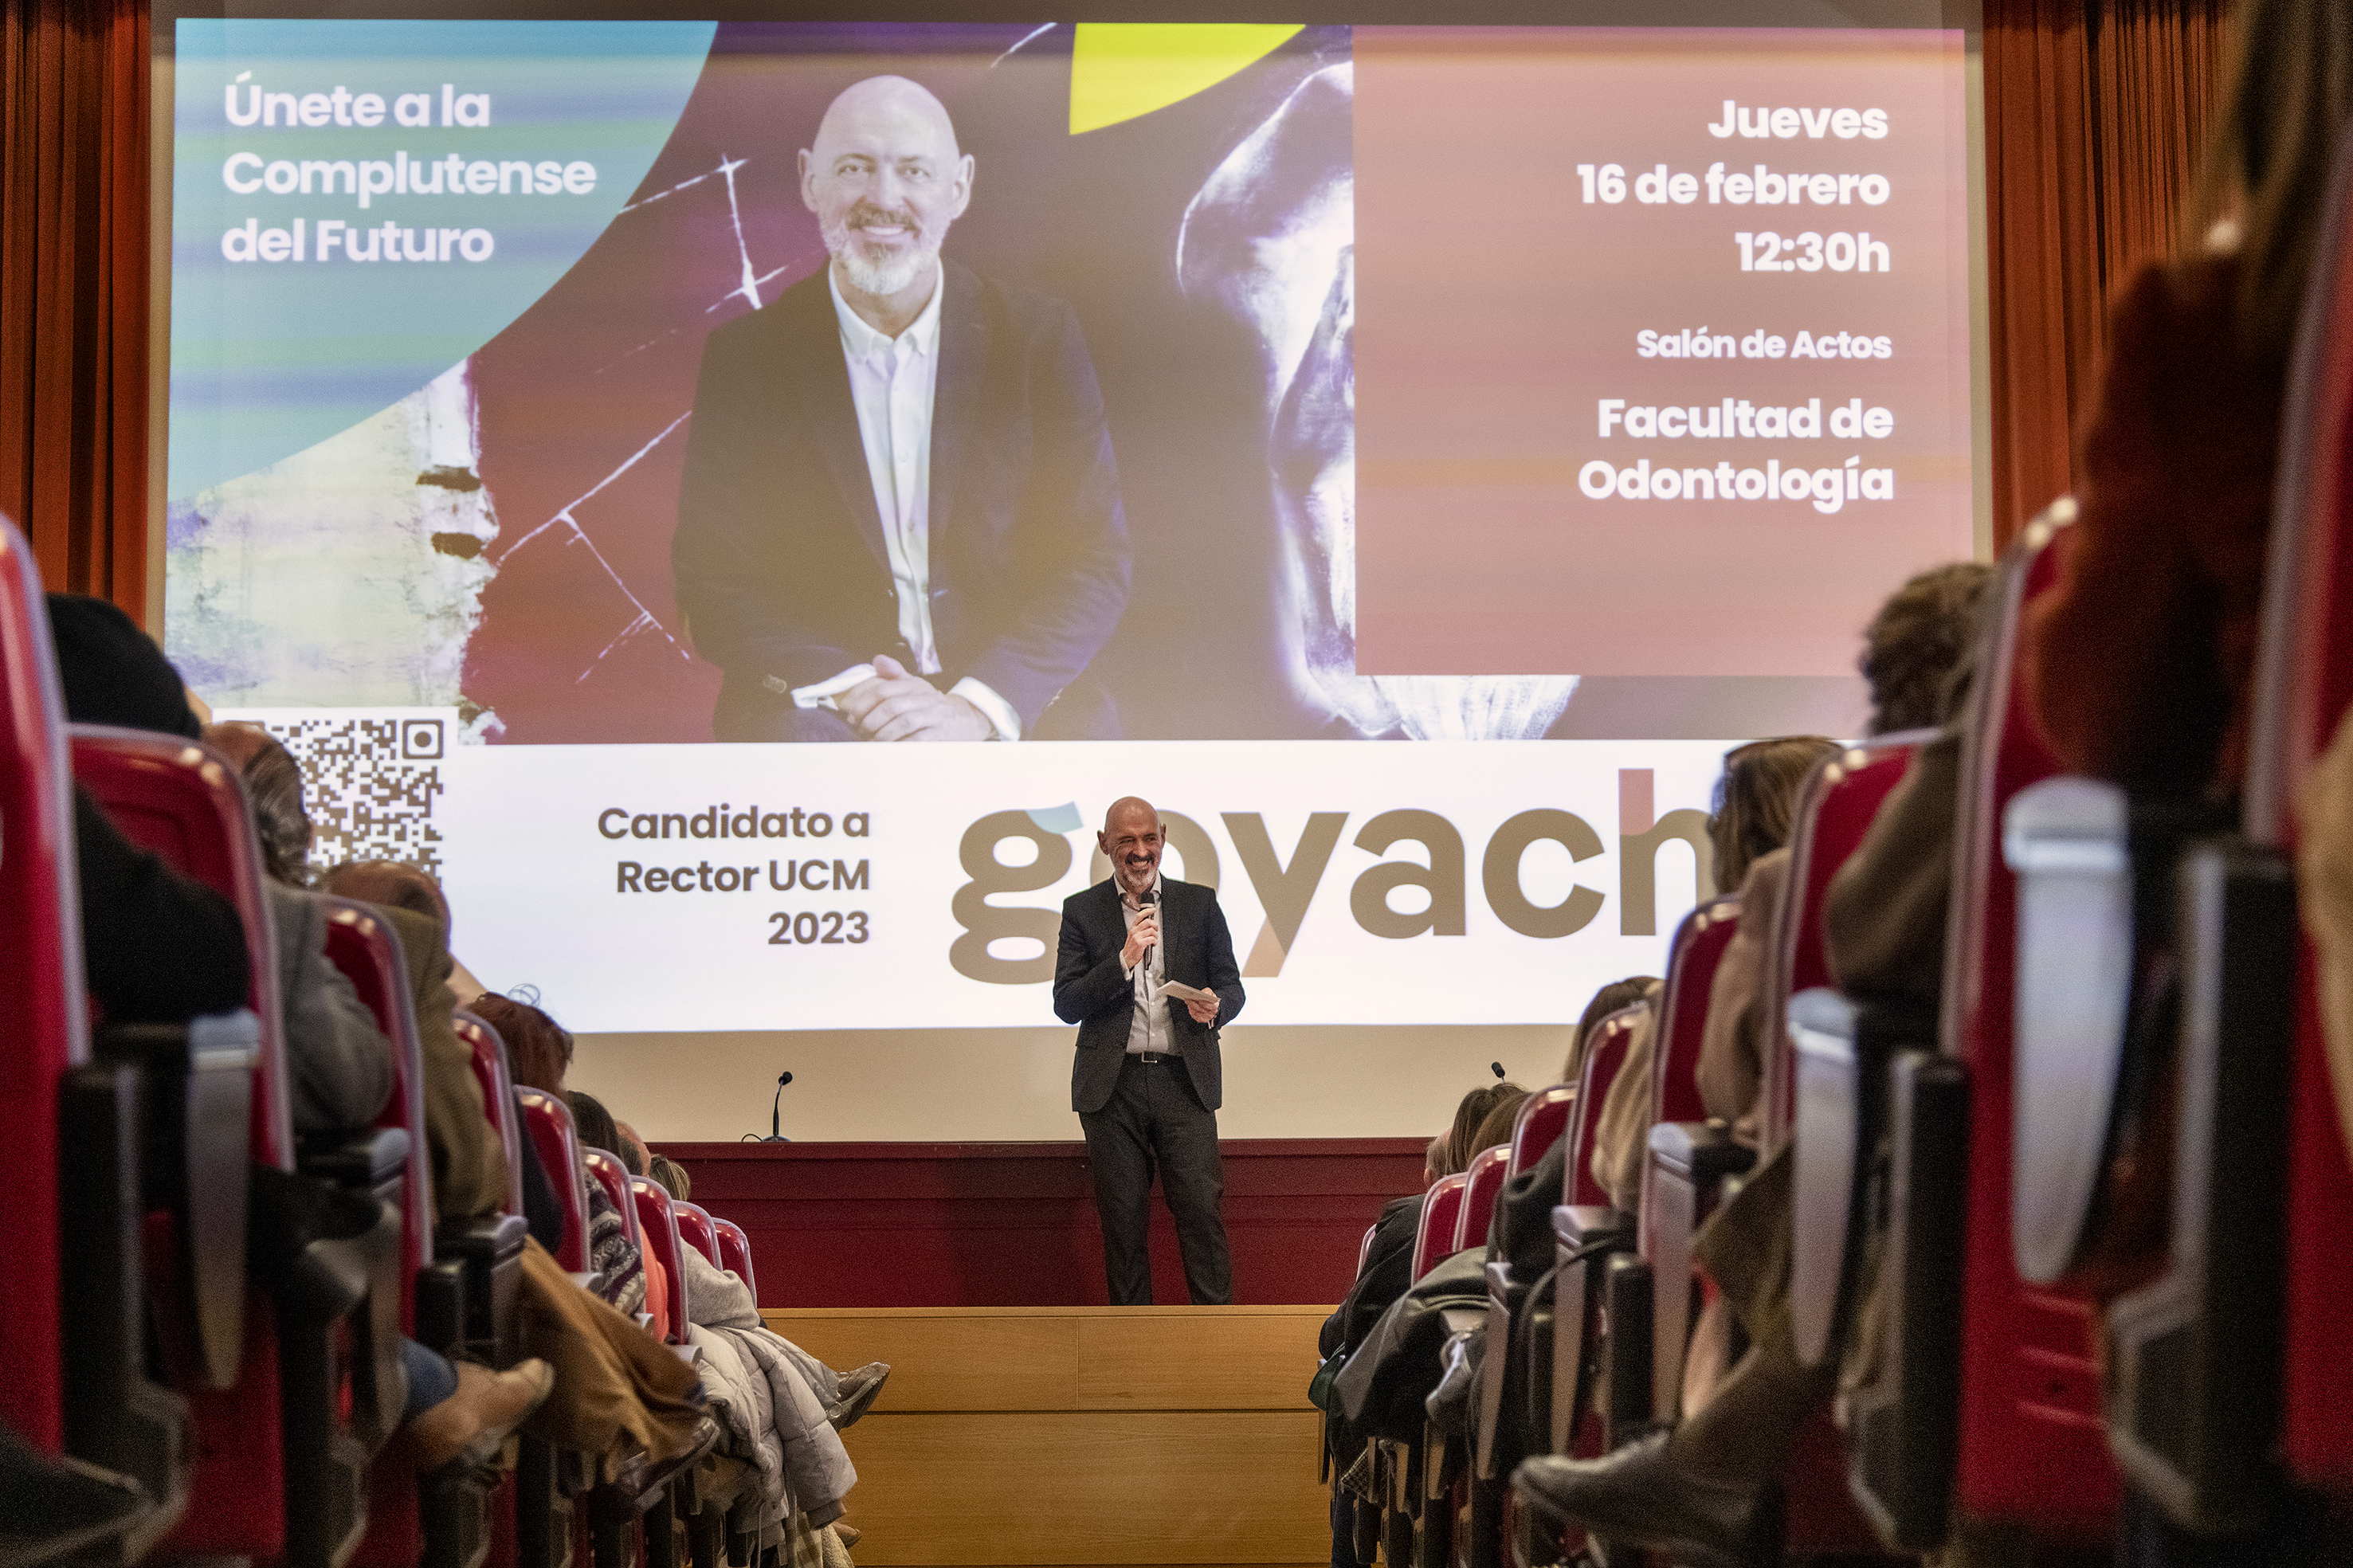 Joaquín Goyache en su acto de campaña en la Facultad de Odontología